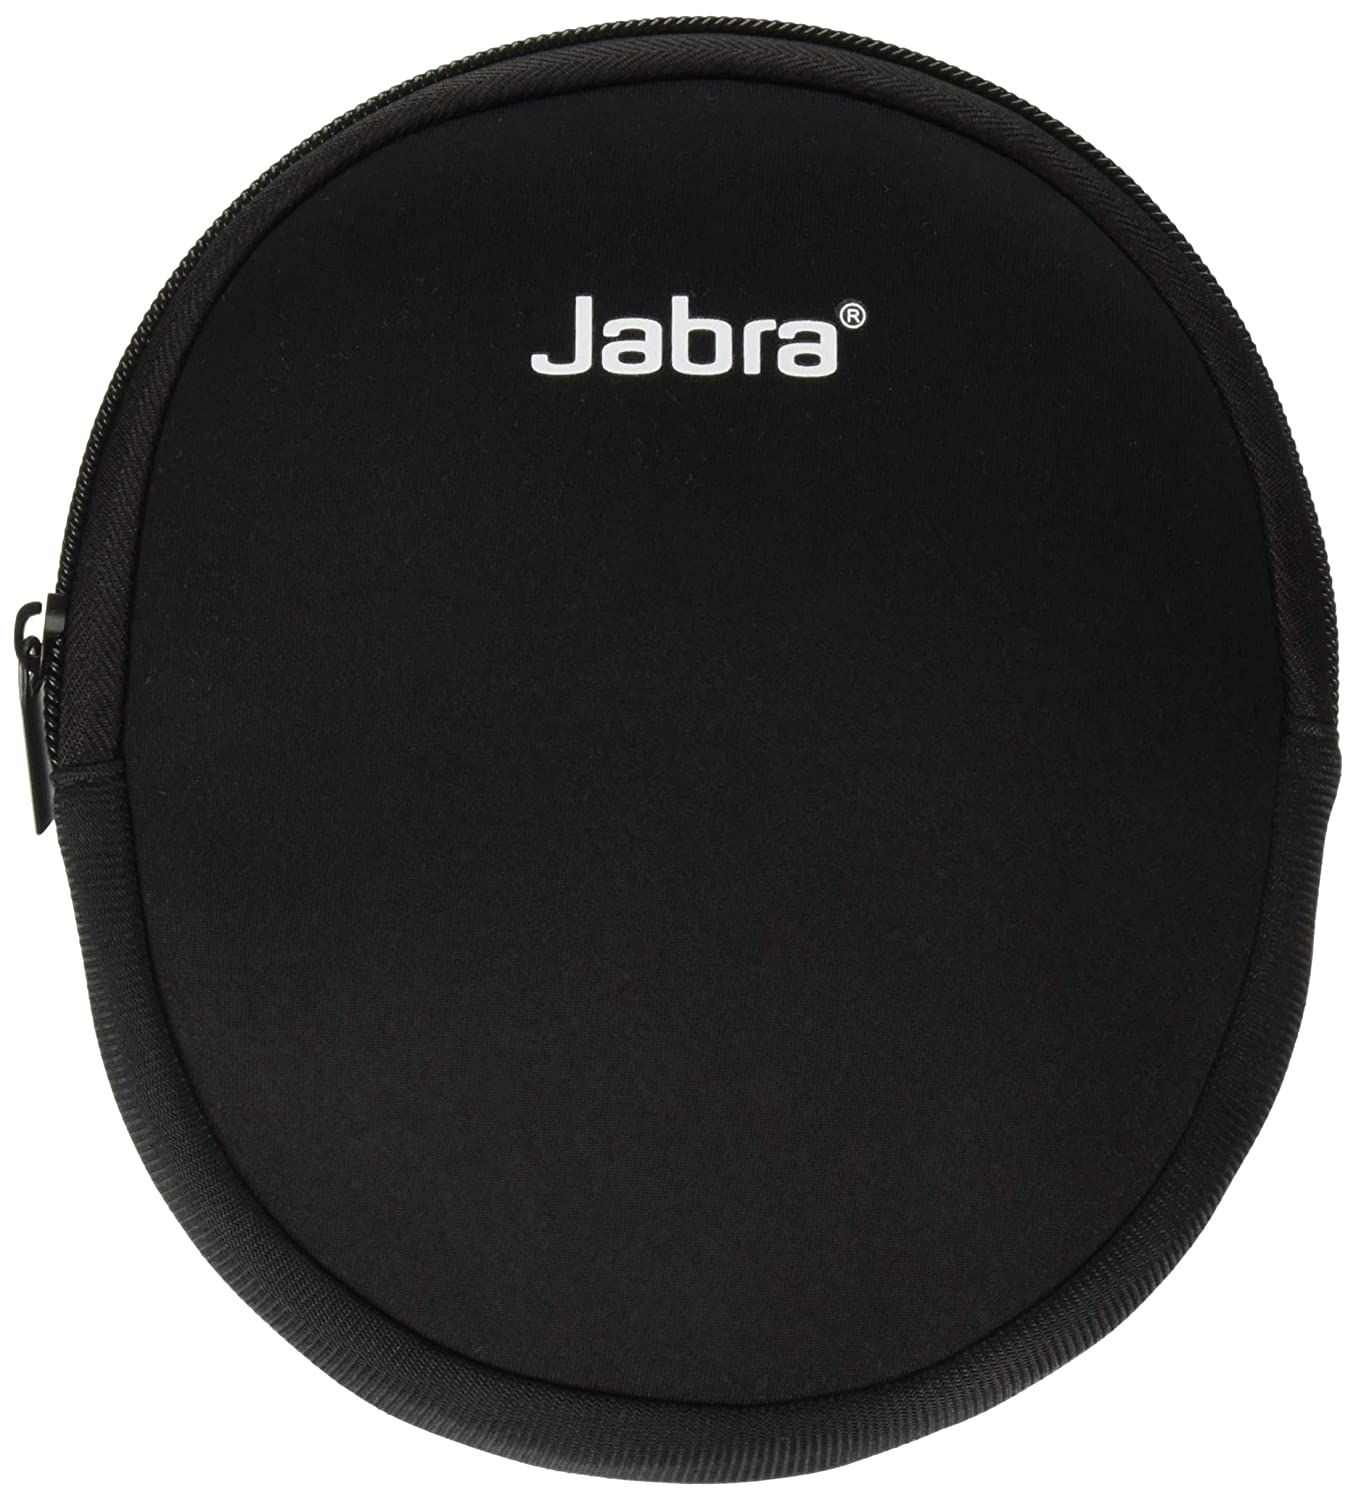 Jabra 10-pack Neoprene Carrying Case Black 